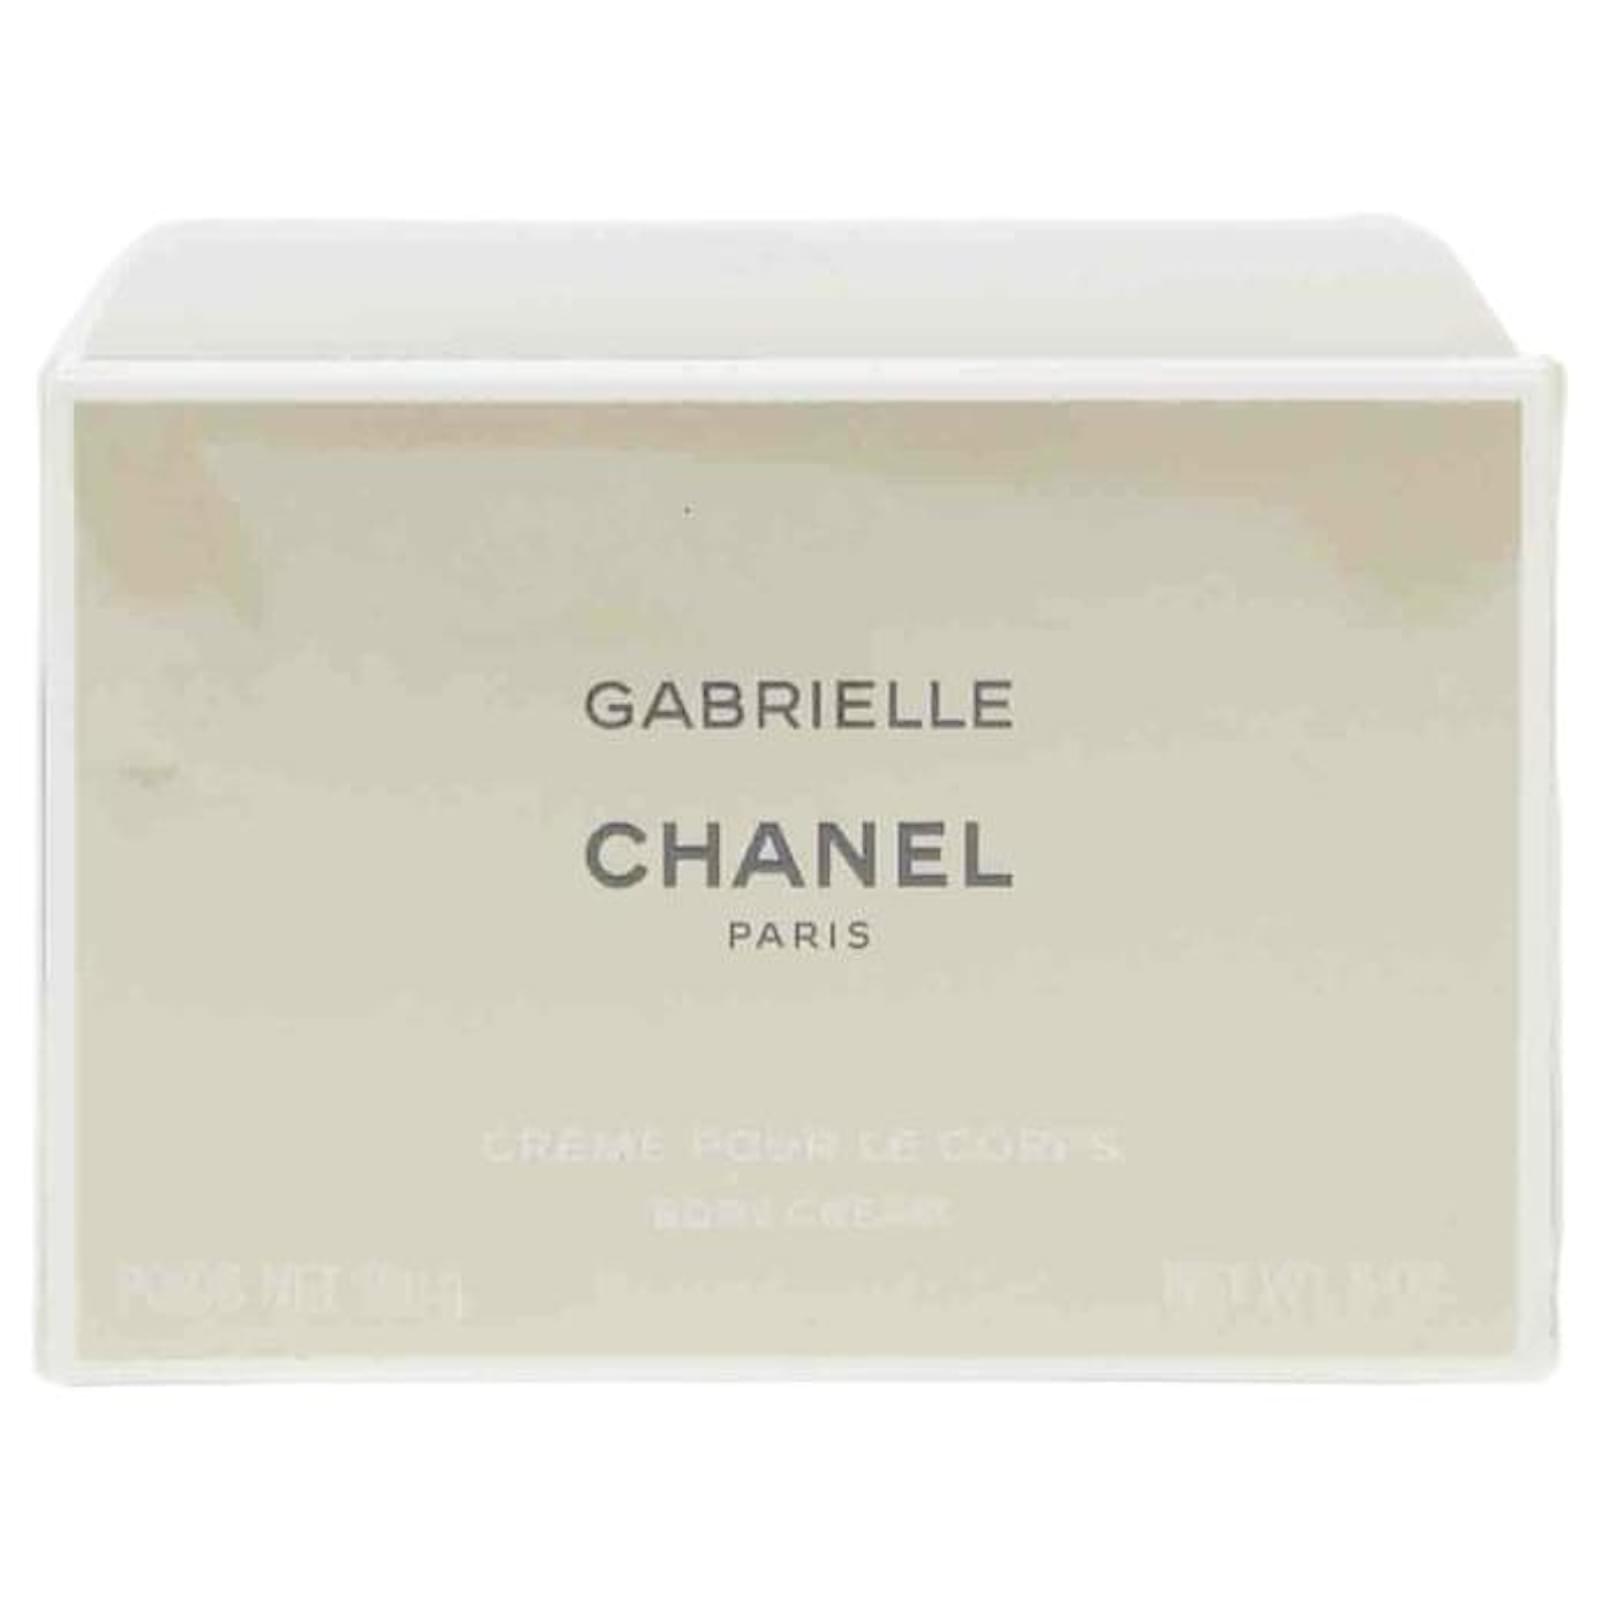 CHANEL, Bath & Body, Chanel Gabrielle Body Cream New Authenticity  Guaranteed